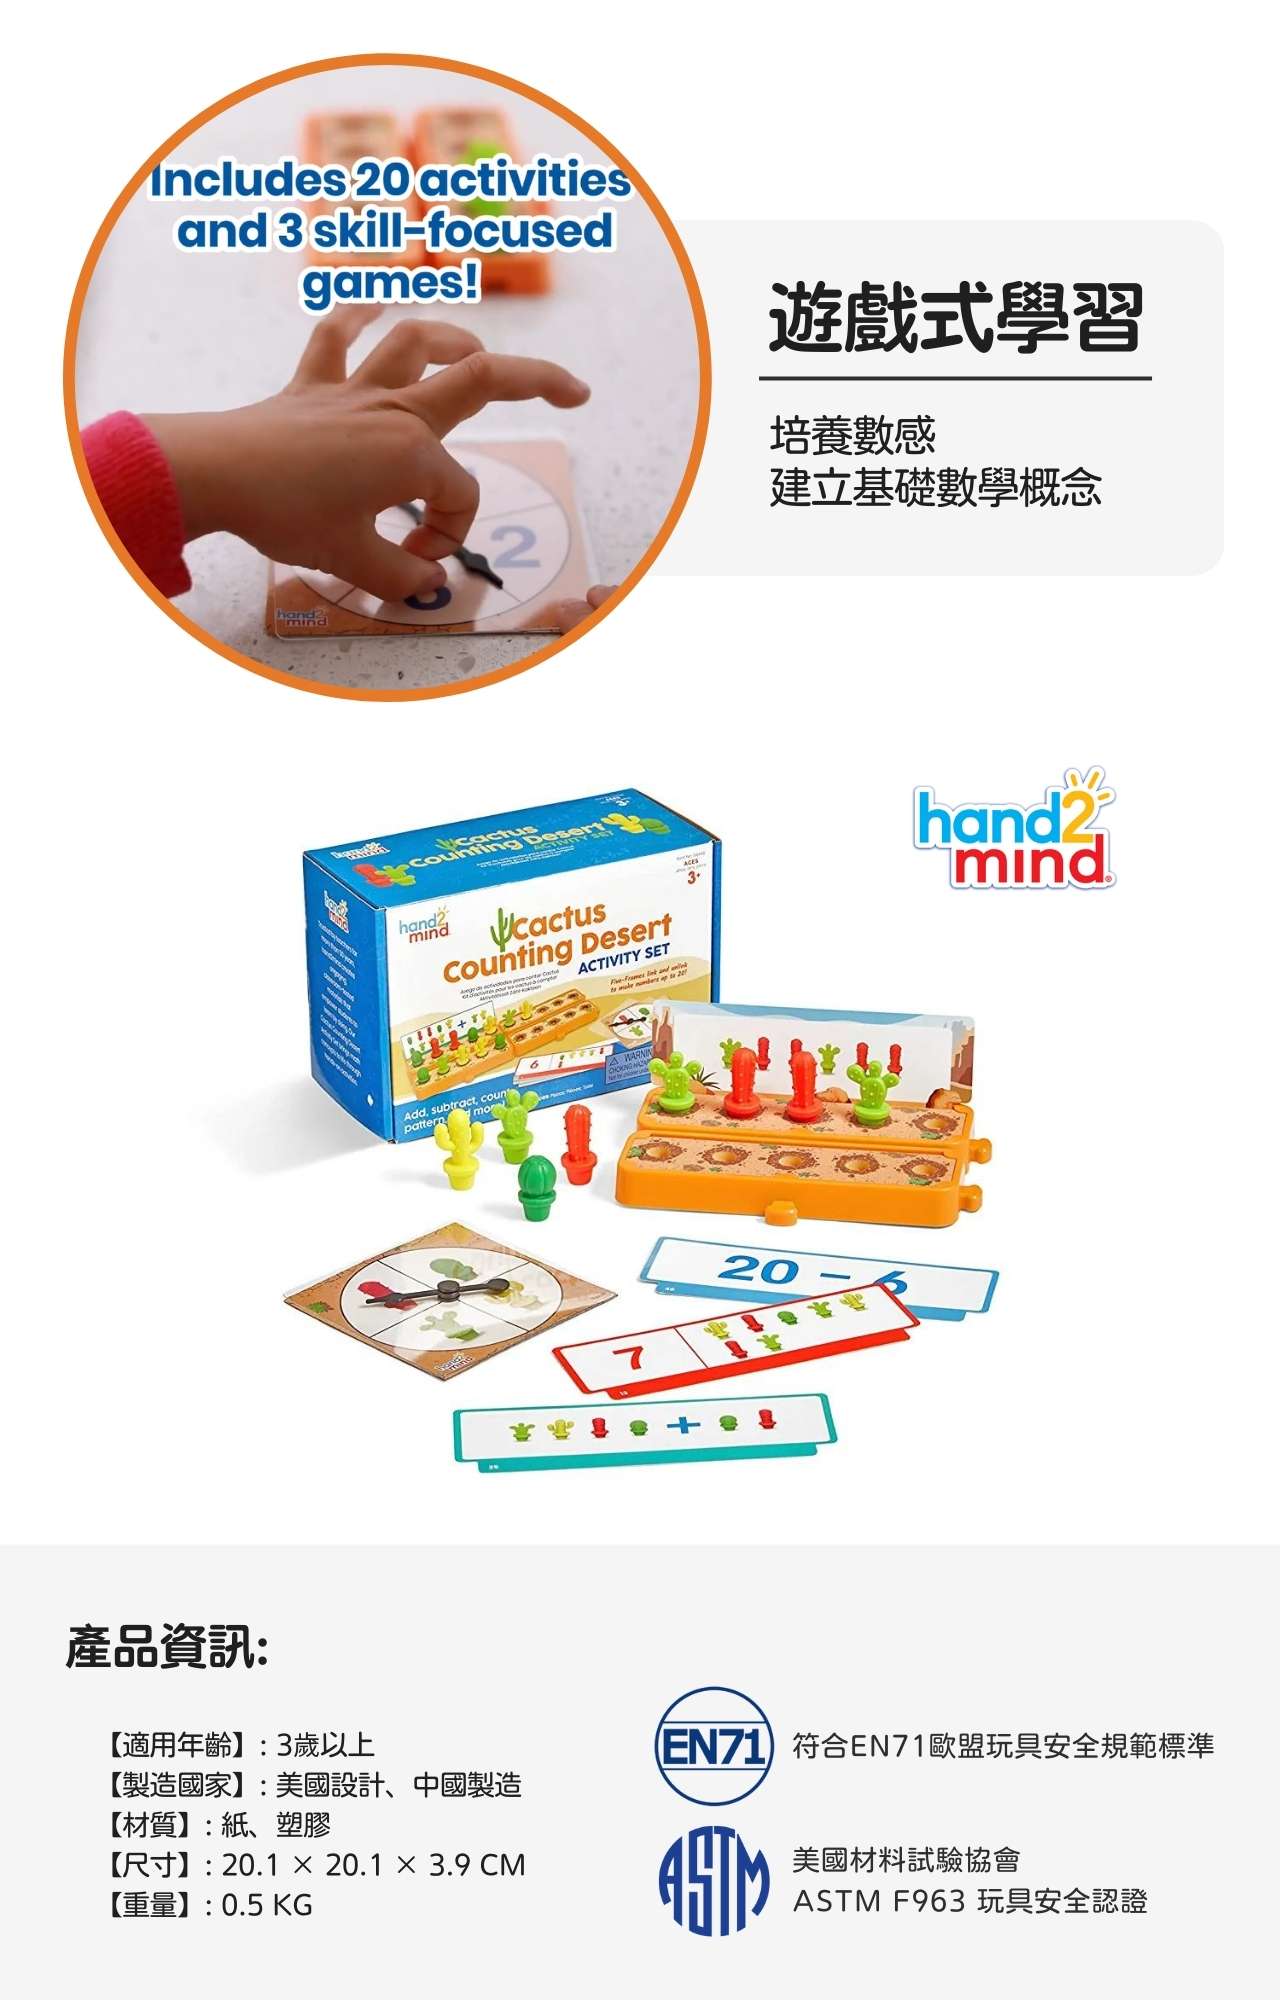 【美國hand2mind】益智數學教具-仙人掌算數遊戲組